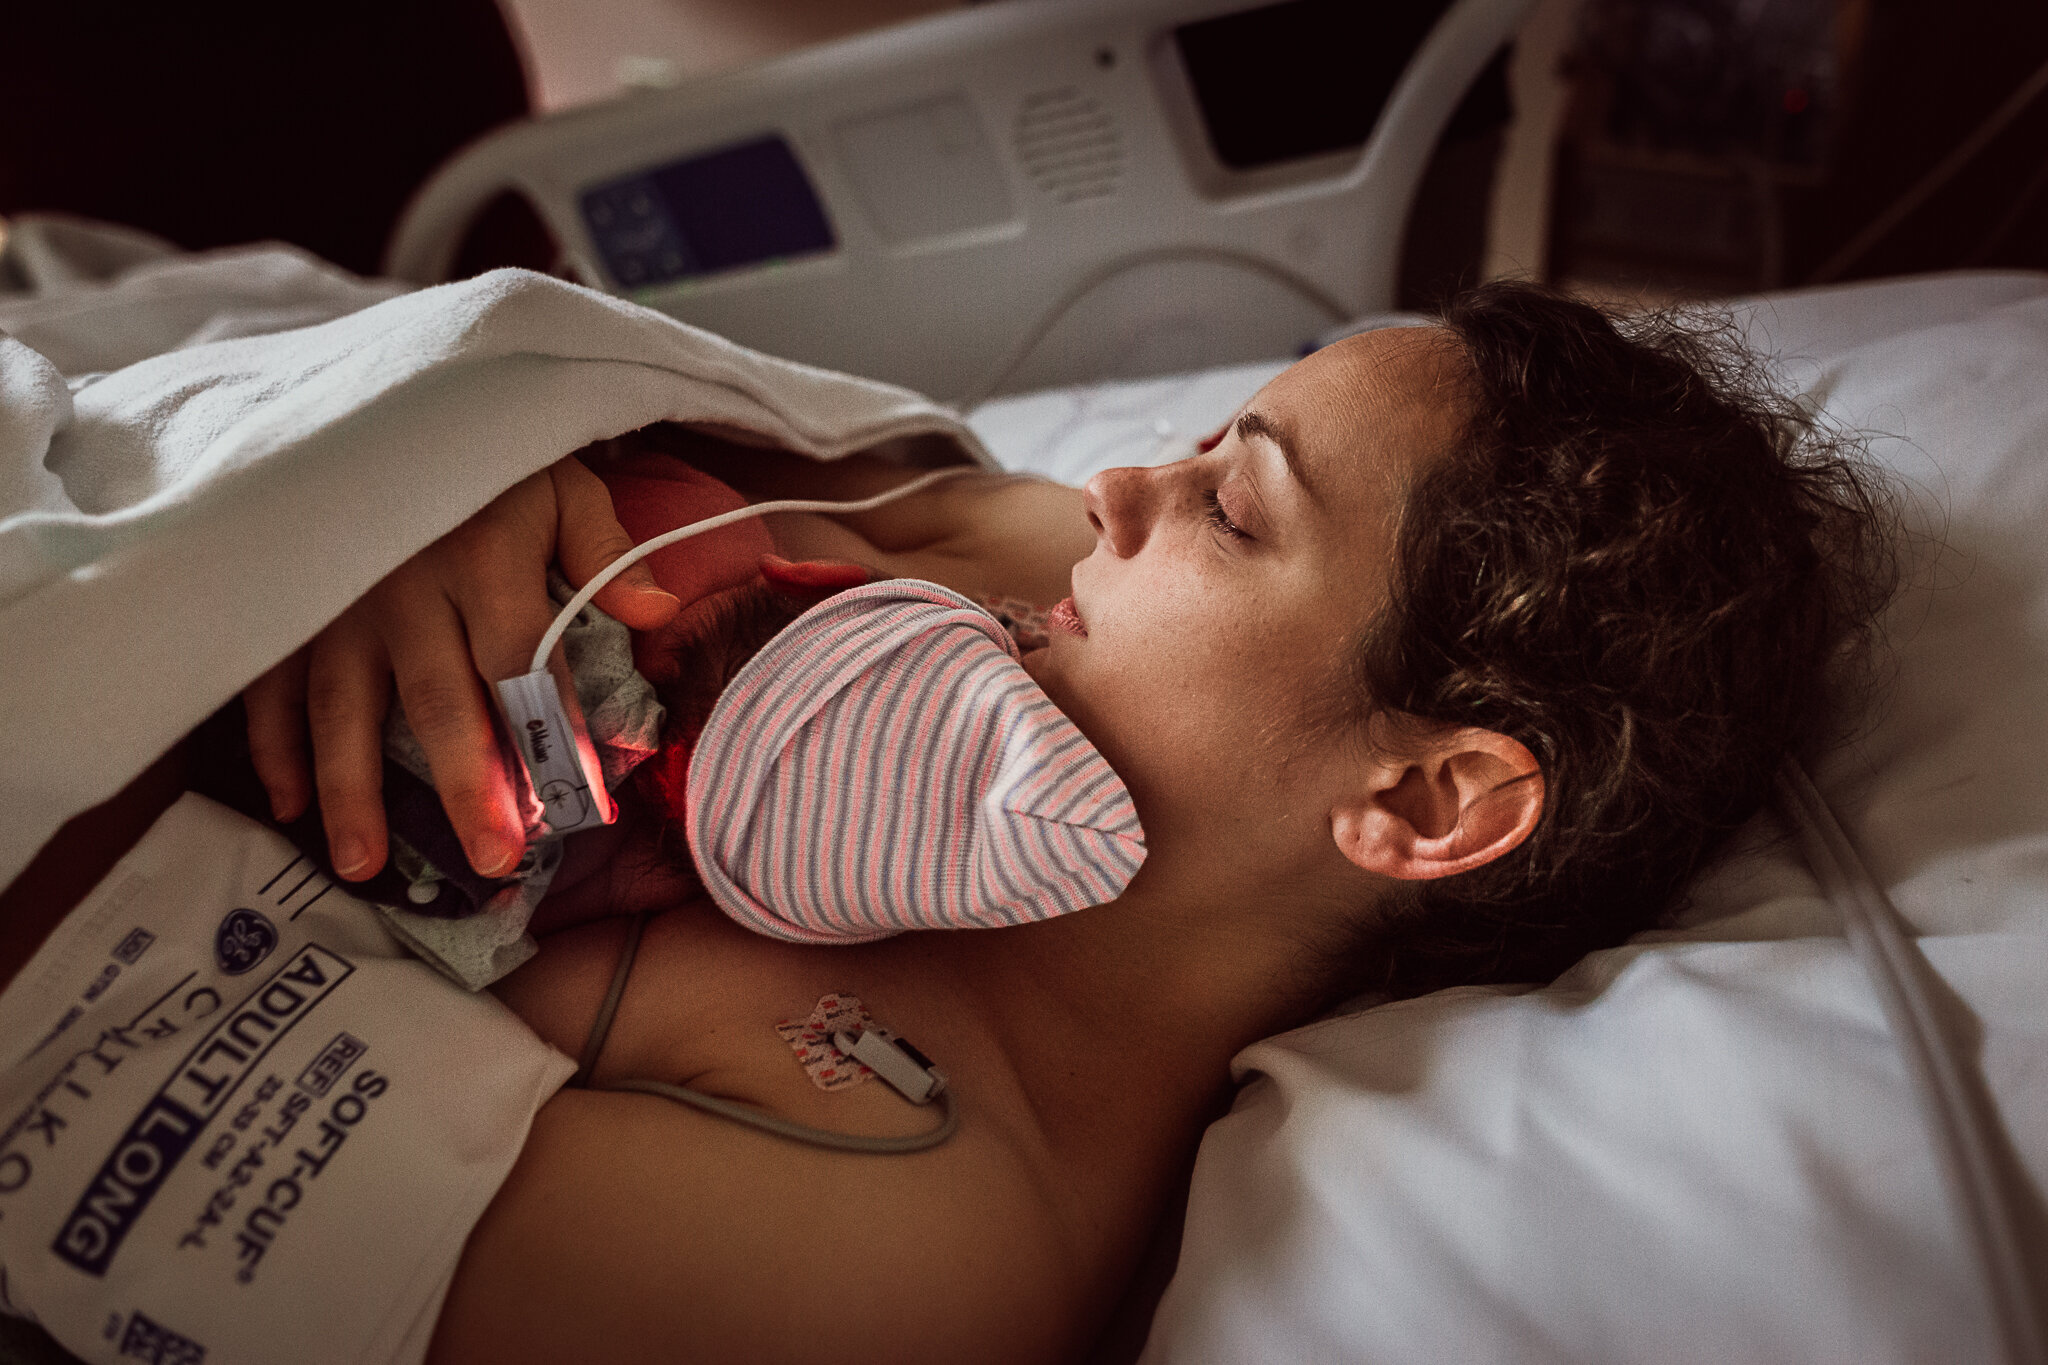 cesarean-birth-postpartum-maggie-williams-3929.jpg